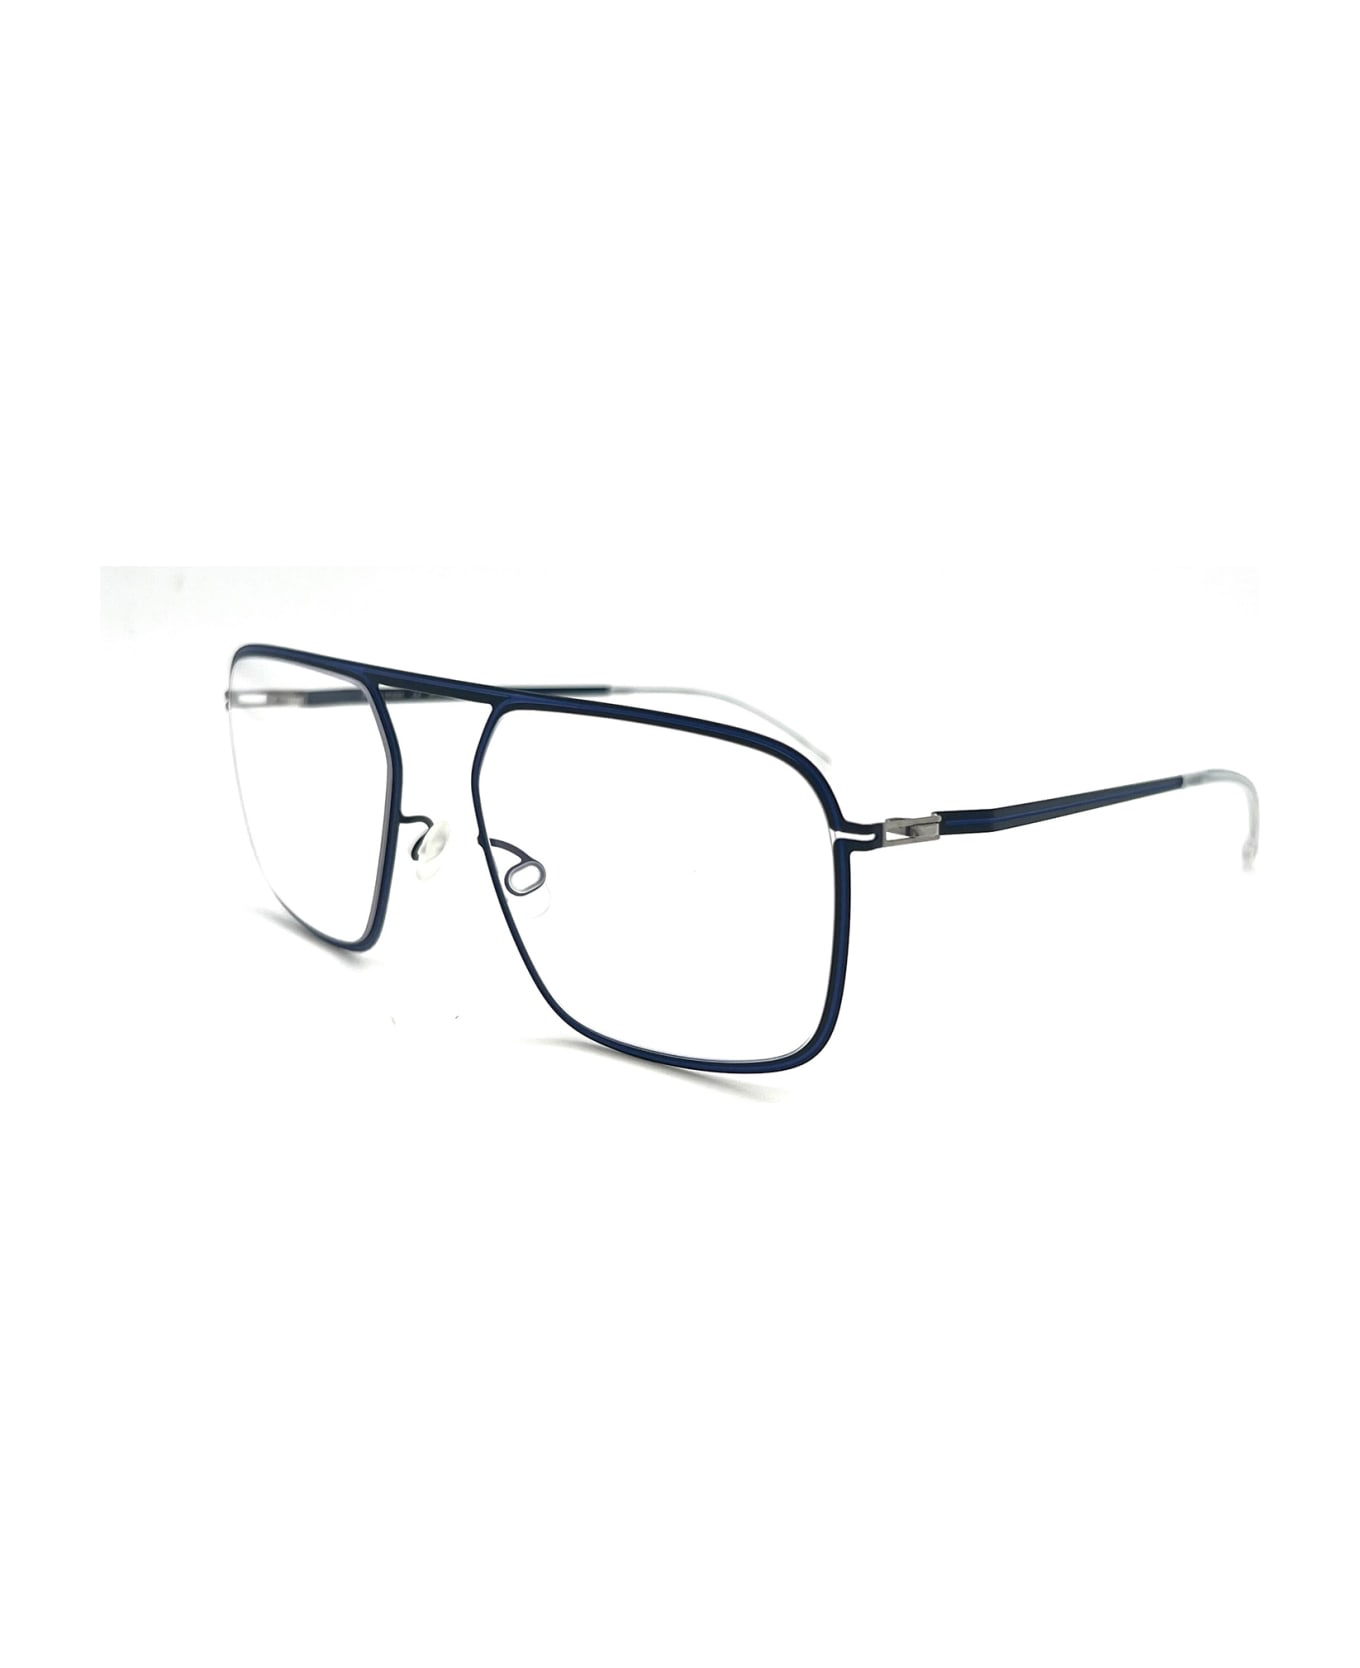 Mykita STUDIO 6.8 Eyewear - Navy/yale Blue